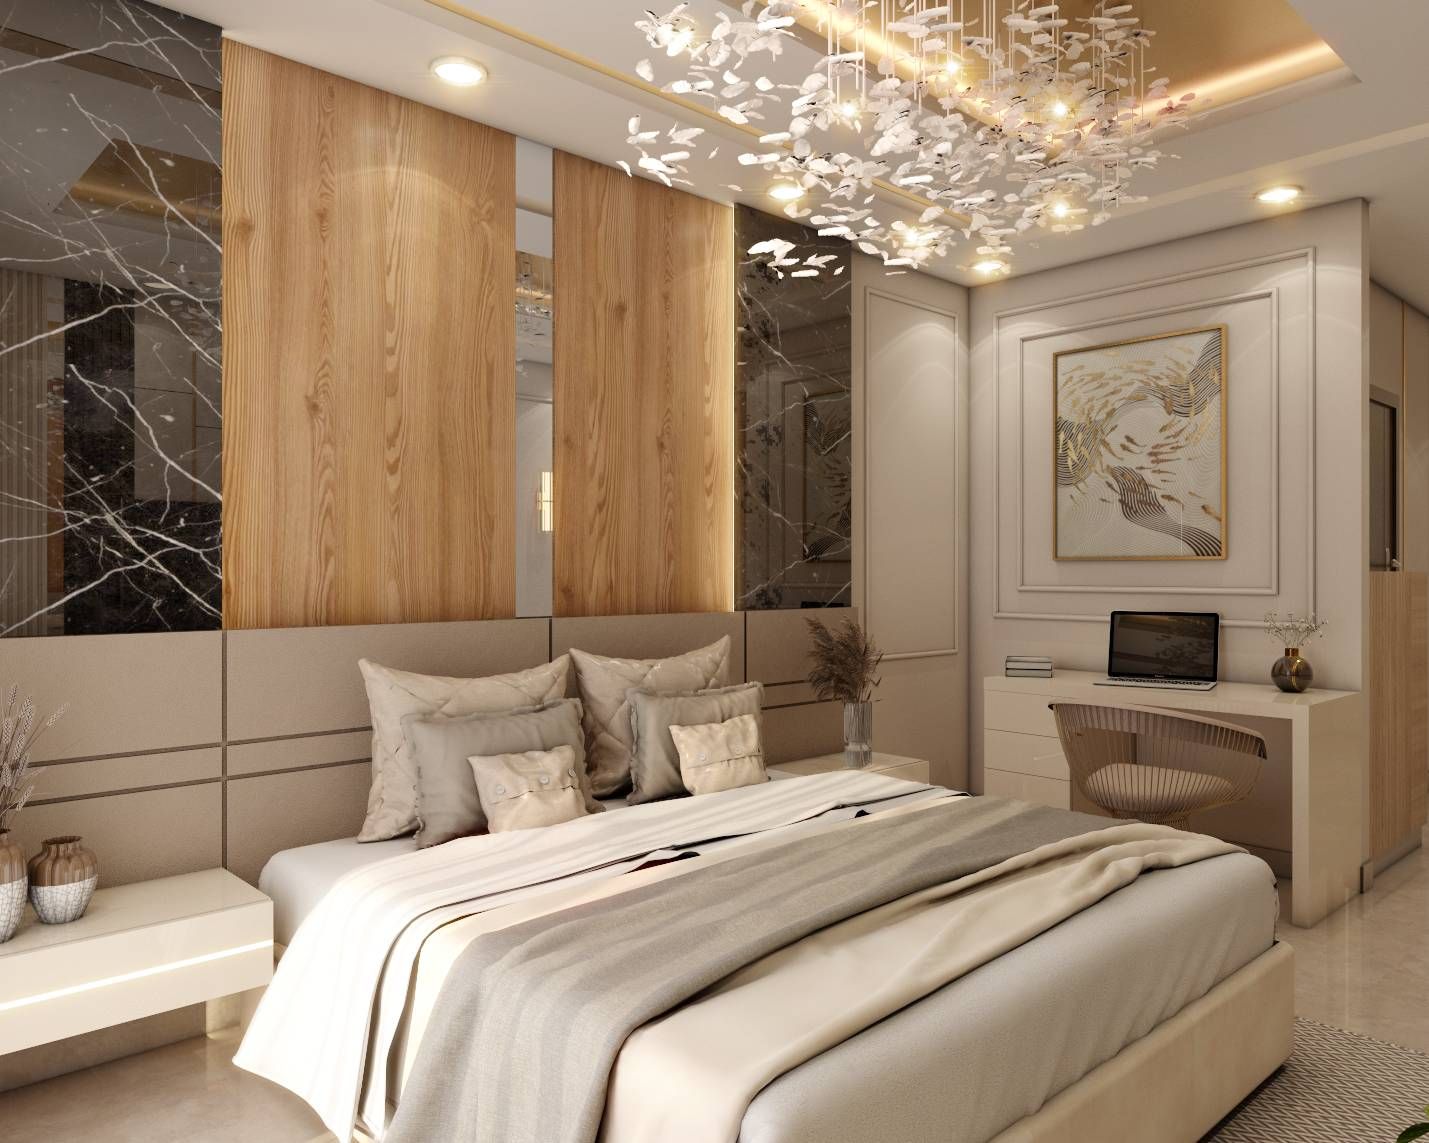 Classic Beige Toned Master Bedroom Design With Chandelier